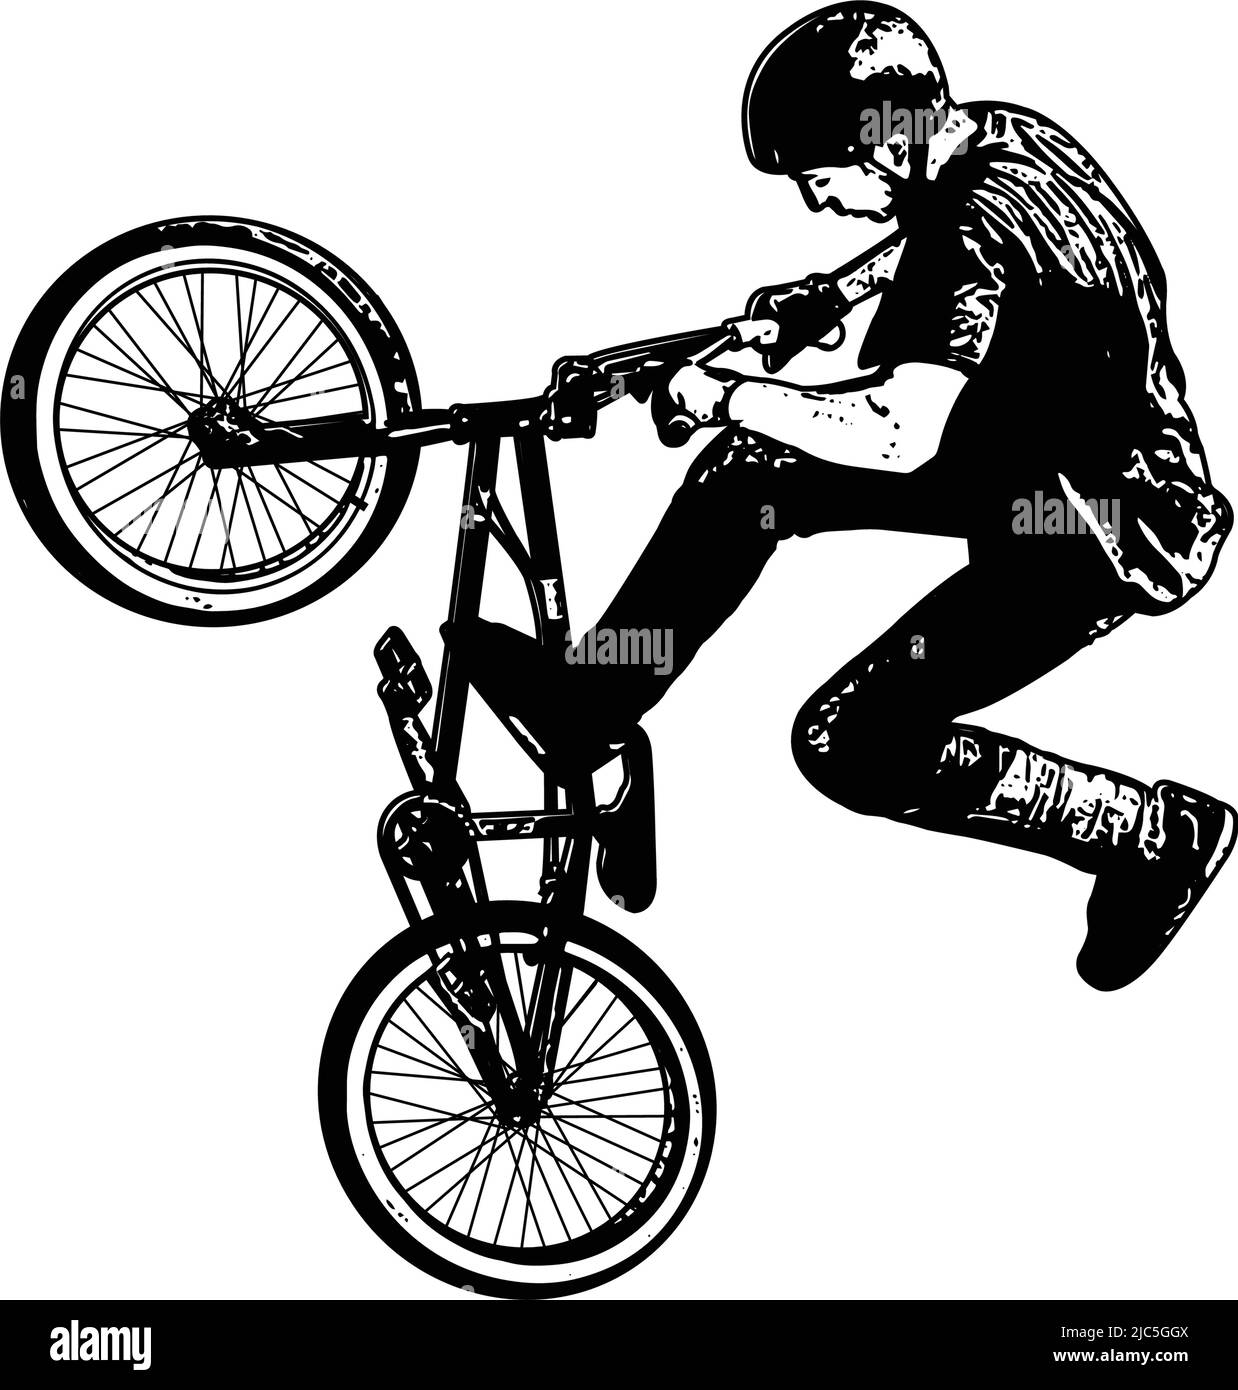 boceto de ciclista de bmx stunt - ilustración vectorial Ilustración del Vector